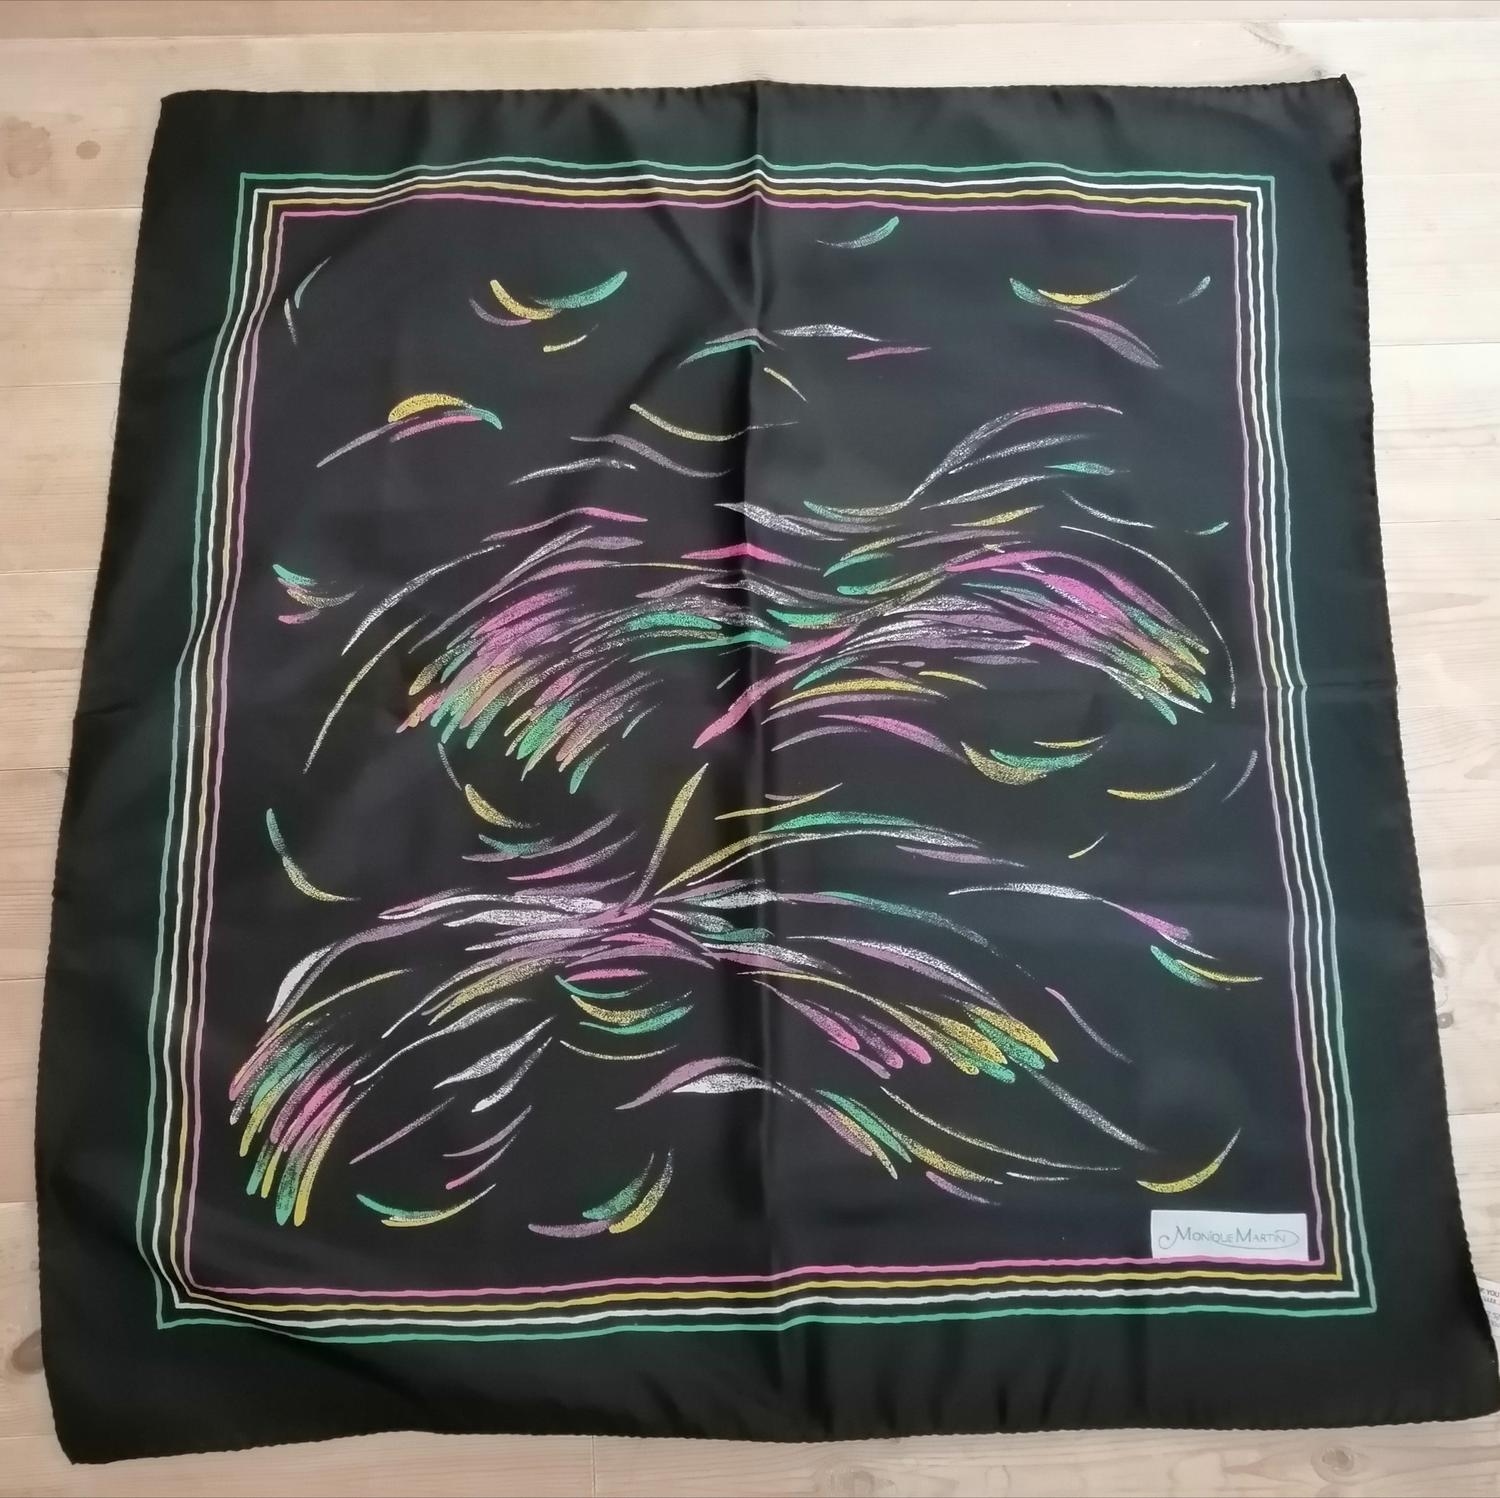 Vintage scarf sjal scarves svart med fyrverkeri i regnbågsfärger Monique Martin